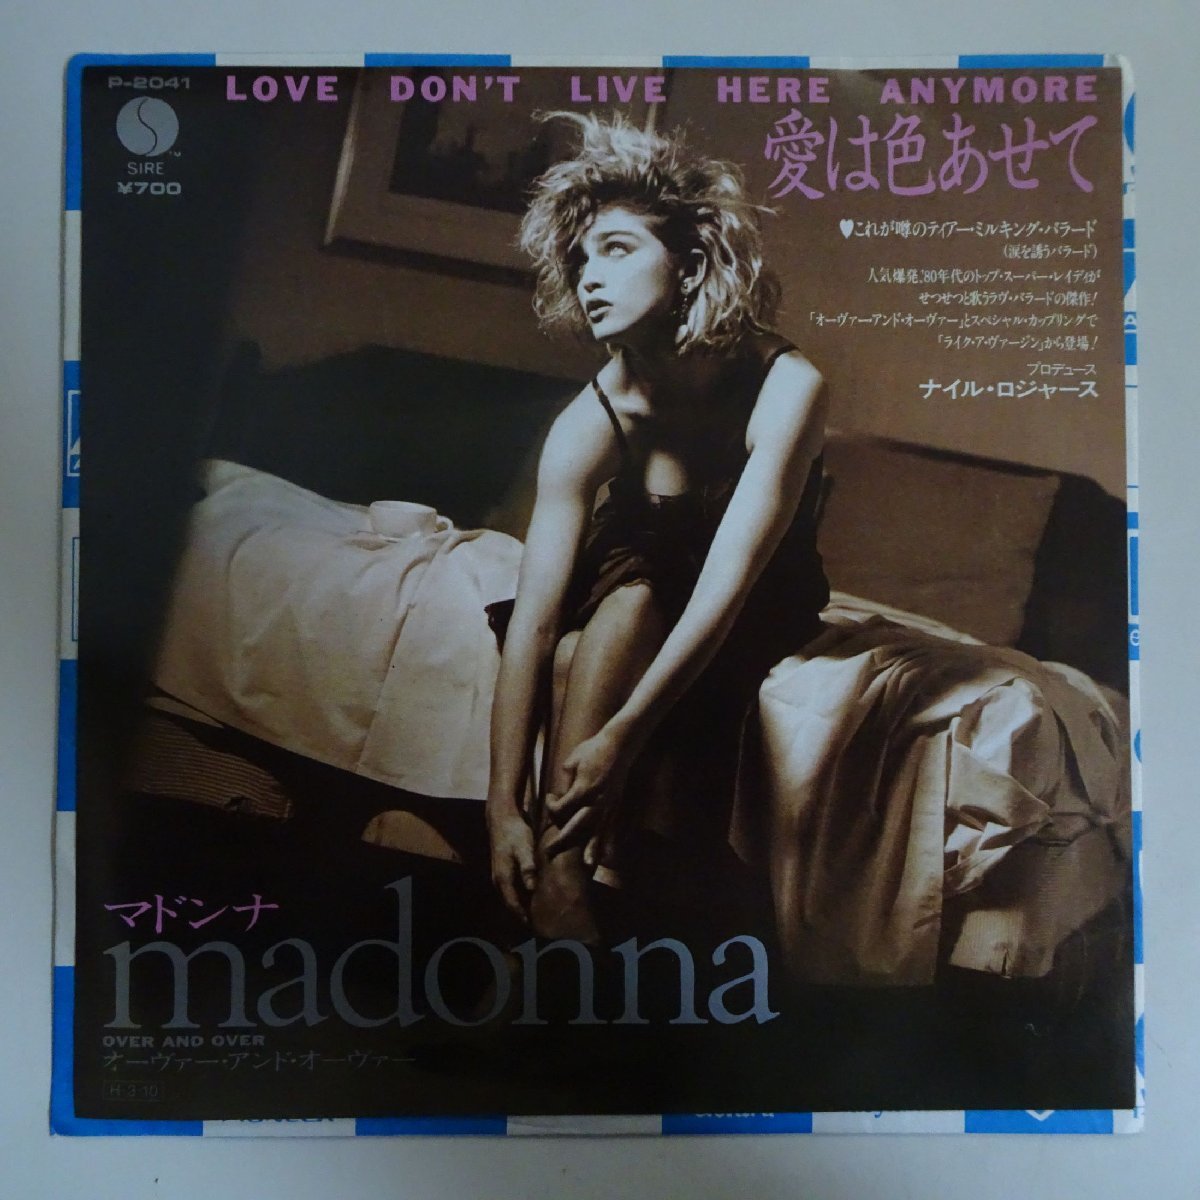 18037082;【国内盤/7inch】Madonna マドンナ / Love Don't Live Here Anymore 愛は色あせて / オーヴァー・アンド・オーヴァー_画像1